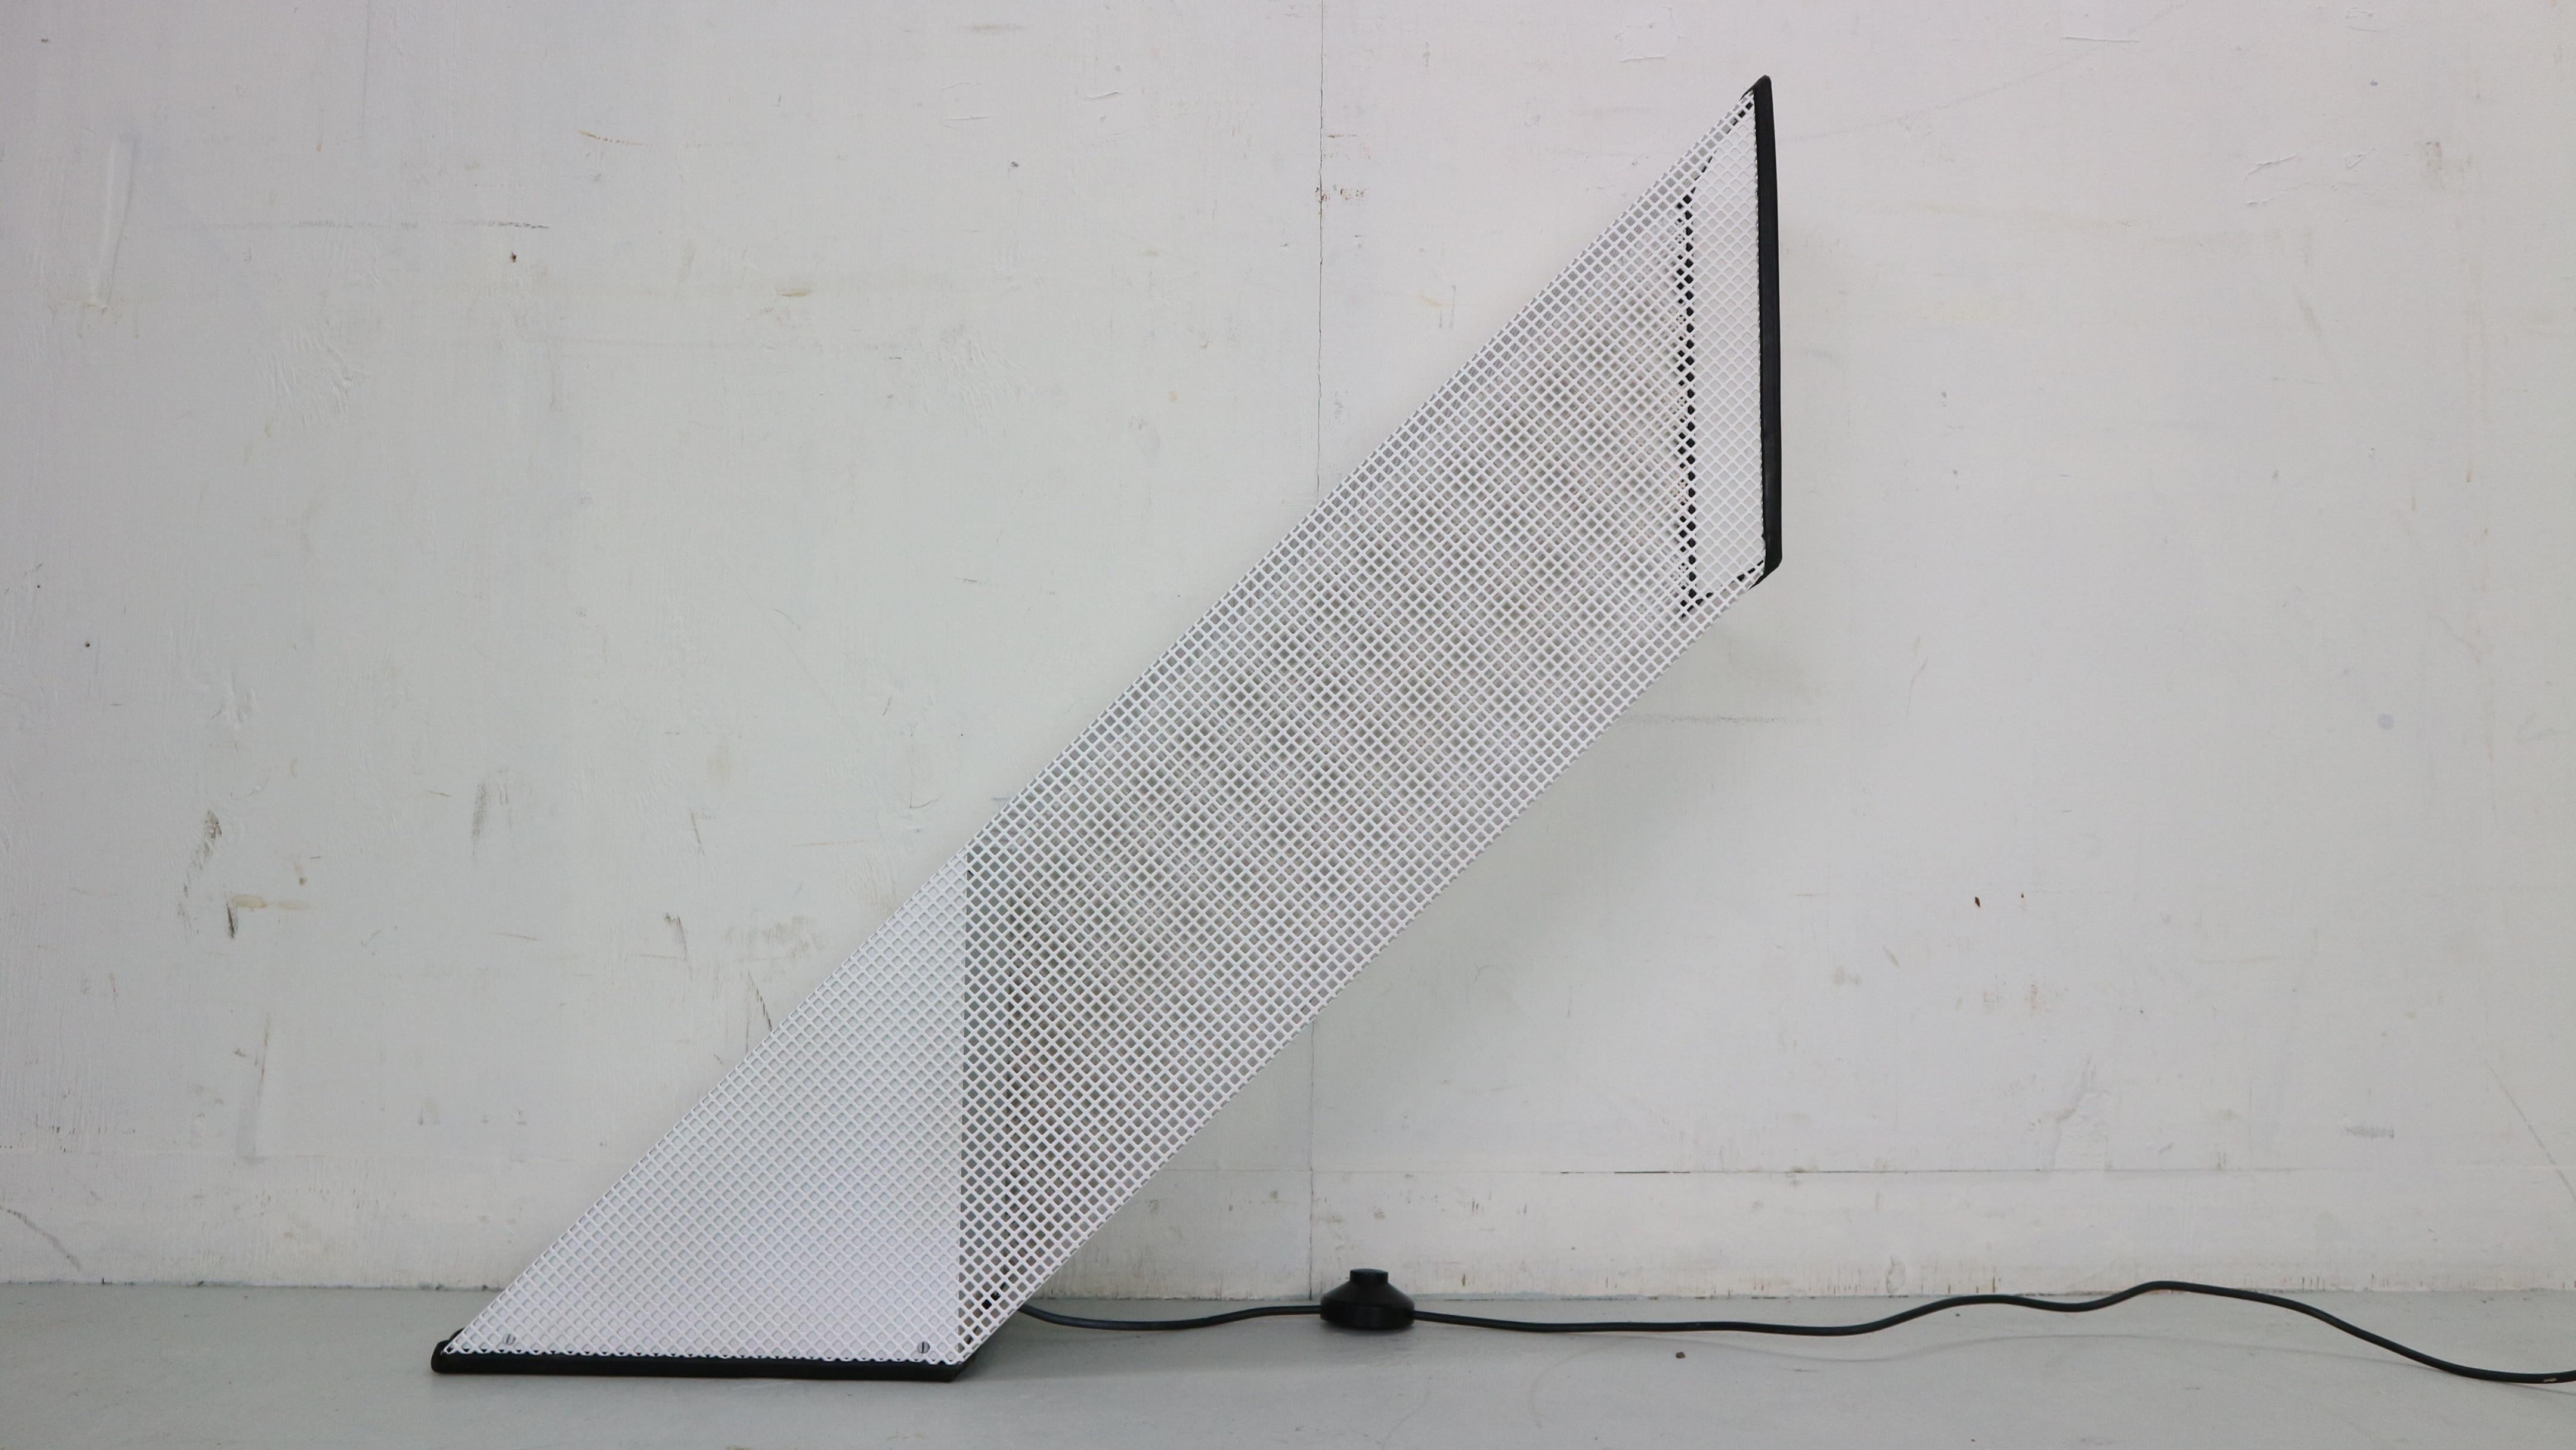 Lampe de table ouverte conçue par paolo piva pour le fabricant italien lumenform, 1970 italie. 
Le modèle est constitué d'une structure maillée en métal blanc avec un intérieur en plastique et métal en forme de pyramide inversée. 
Une ampoule à